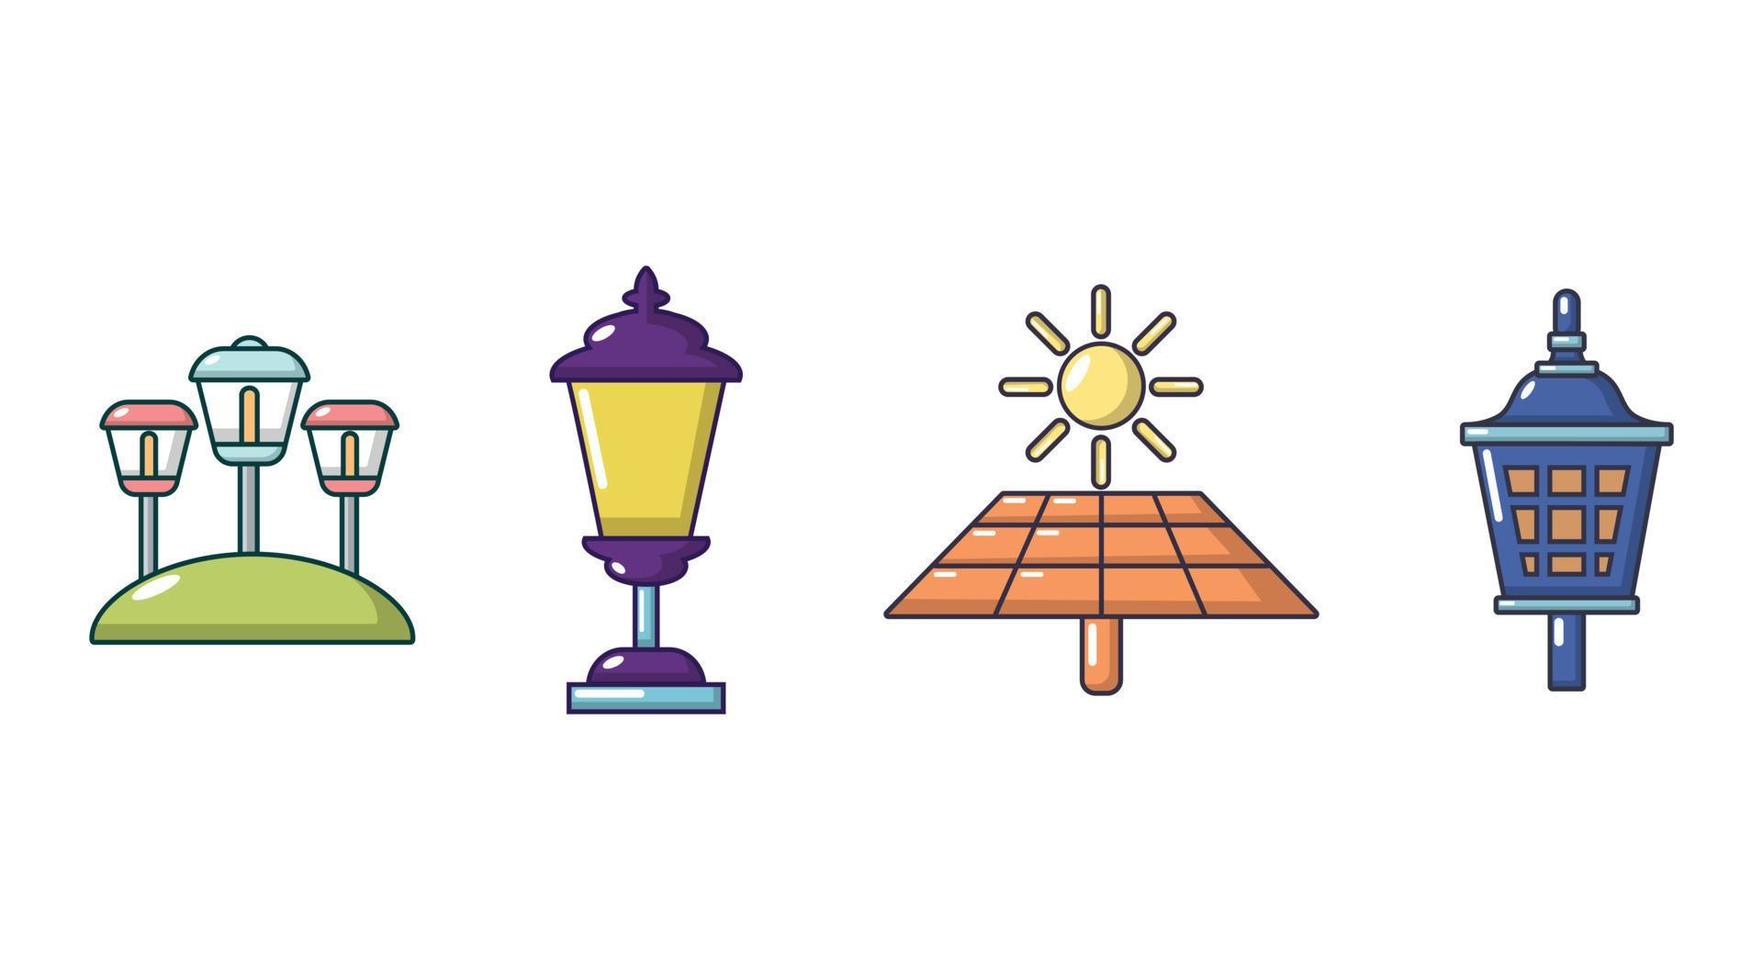 Street light icon set, cartoon style vector